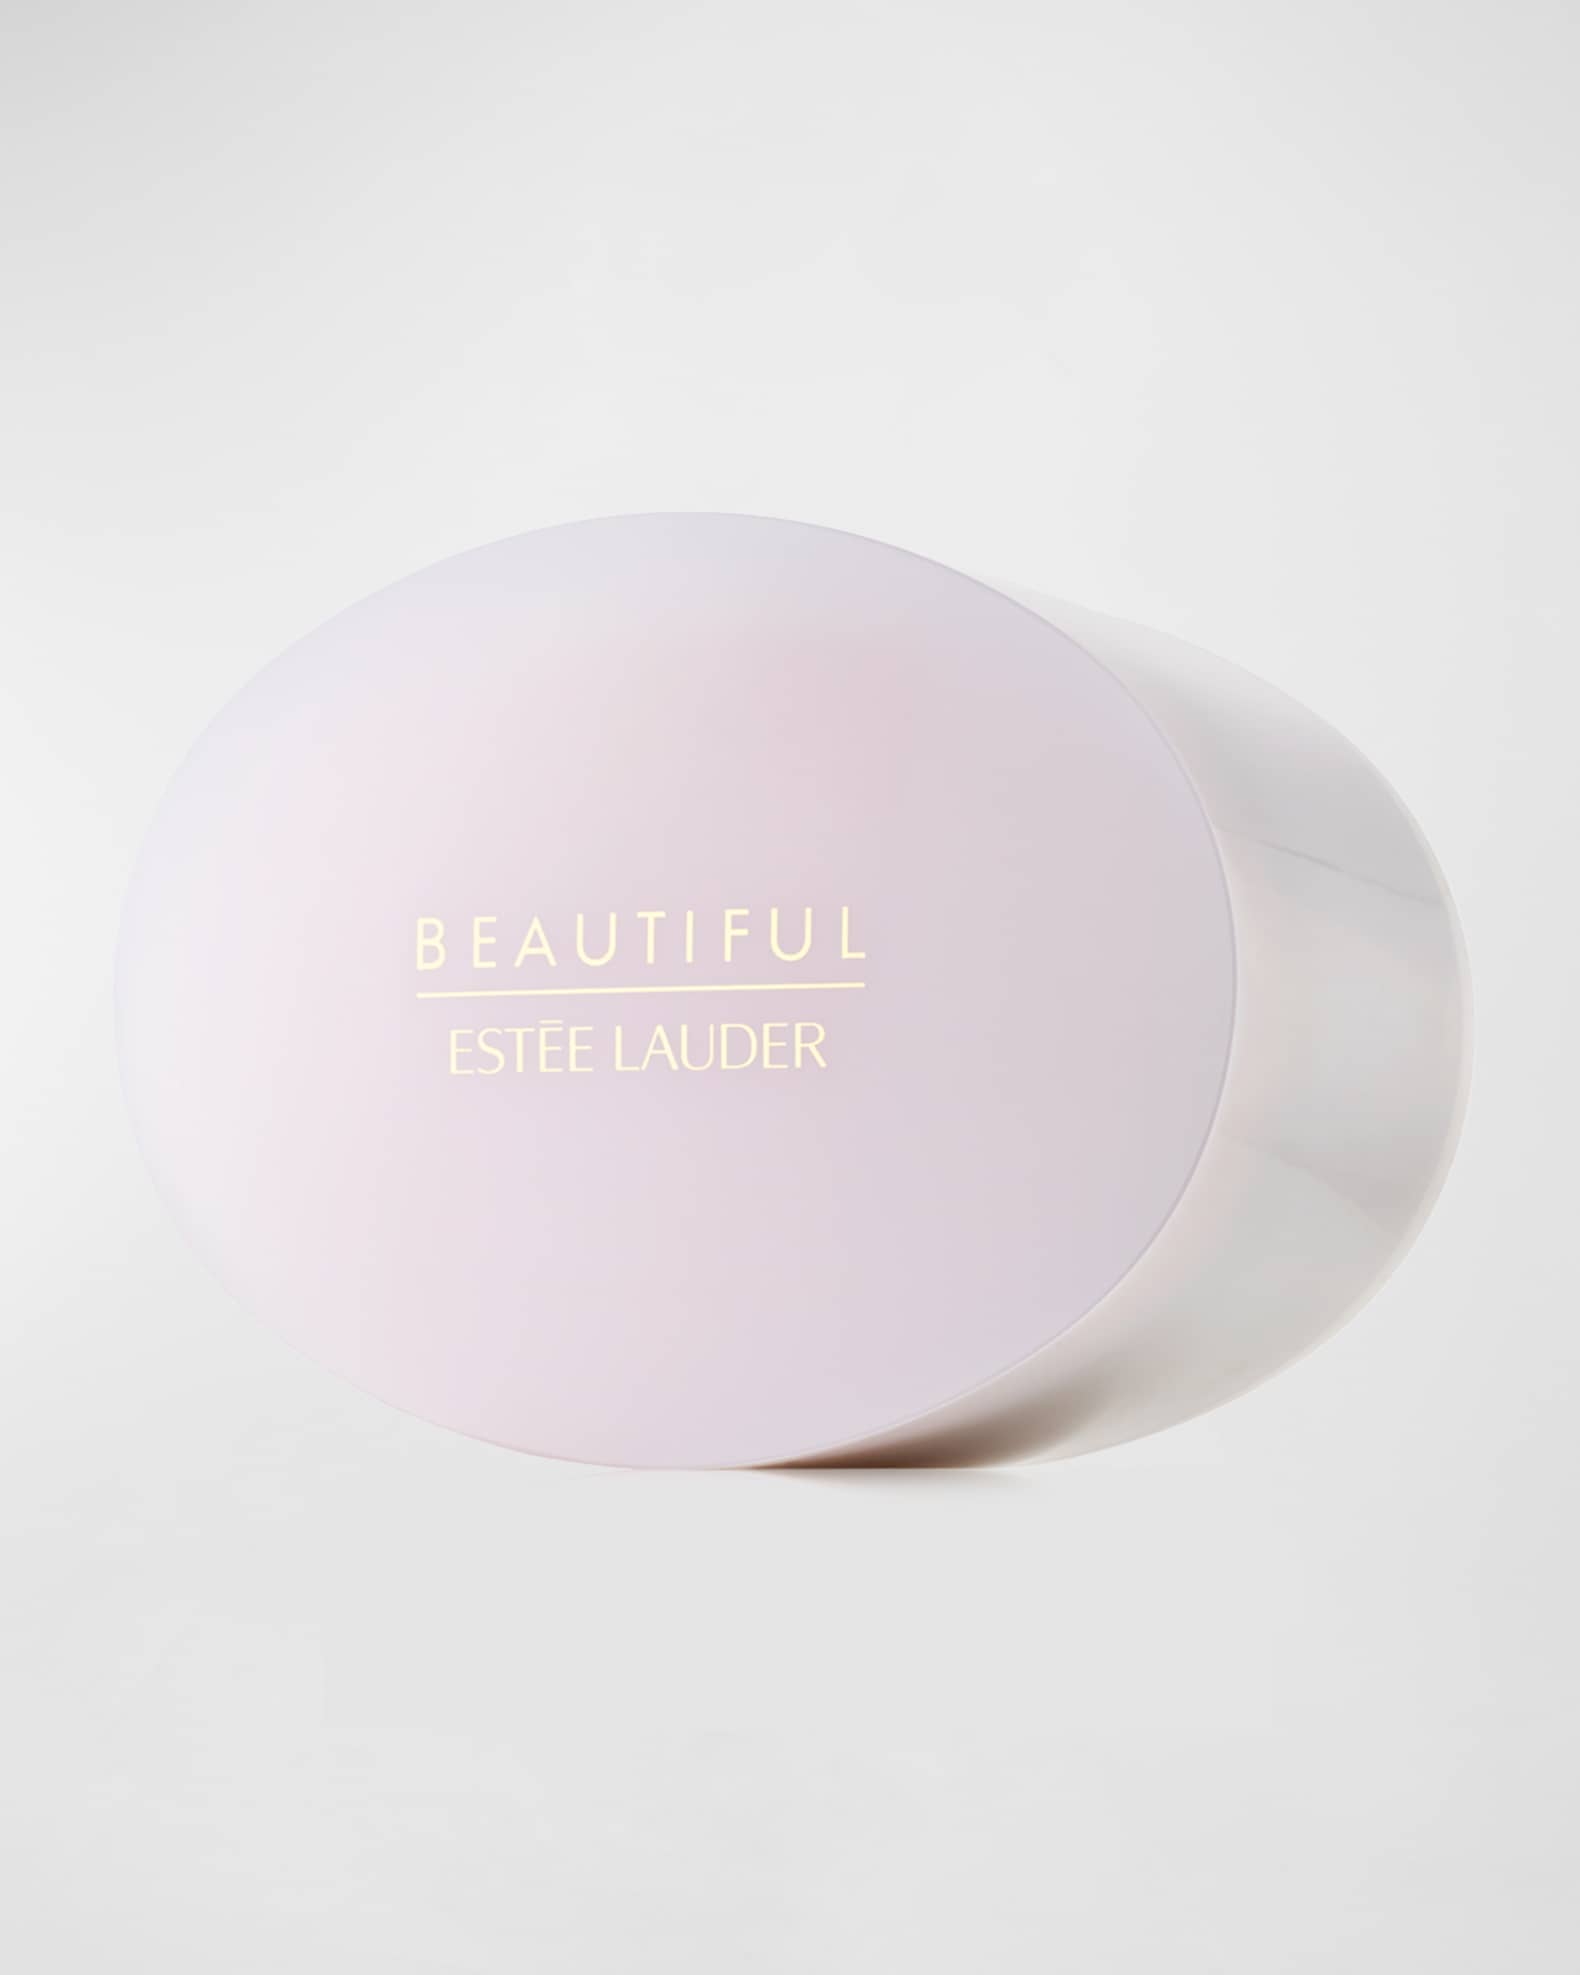 Estee Lauder Beautiful Perfumed Body Powder, 3.5 oz